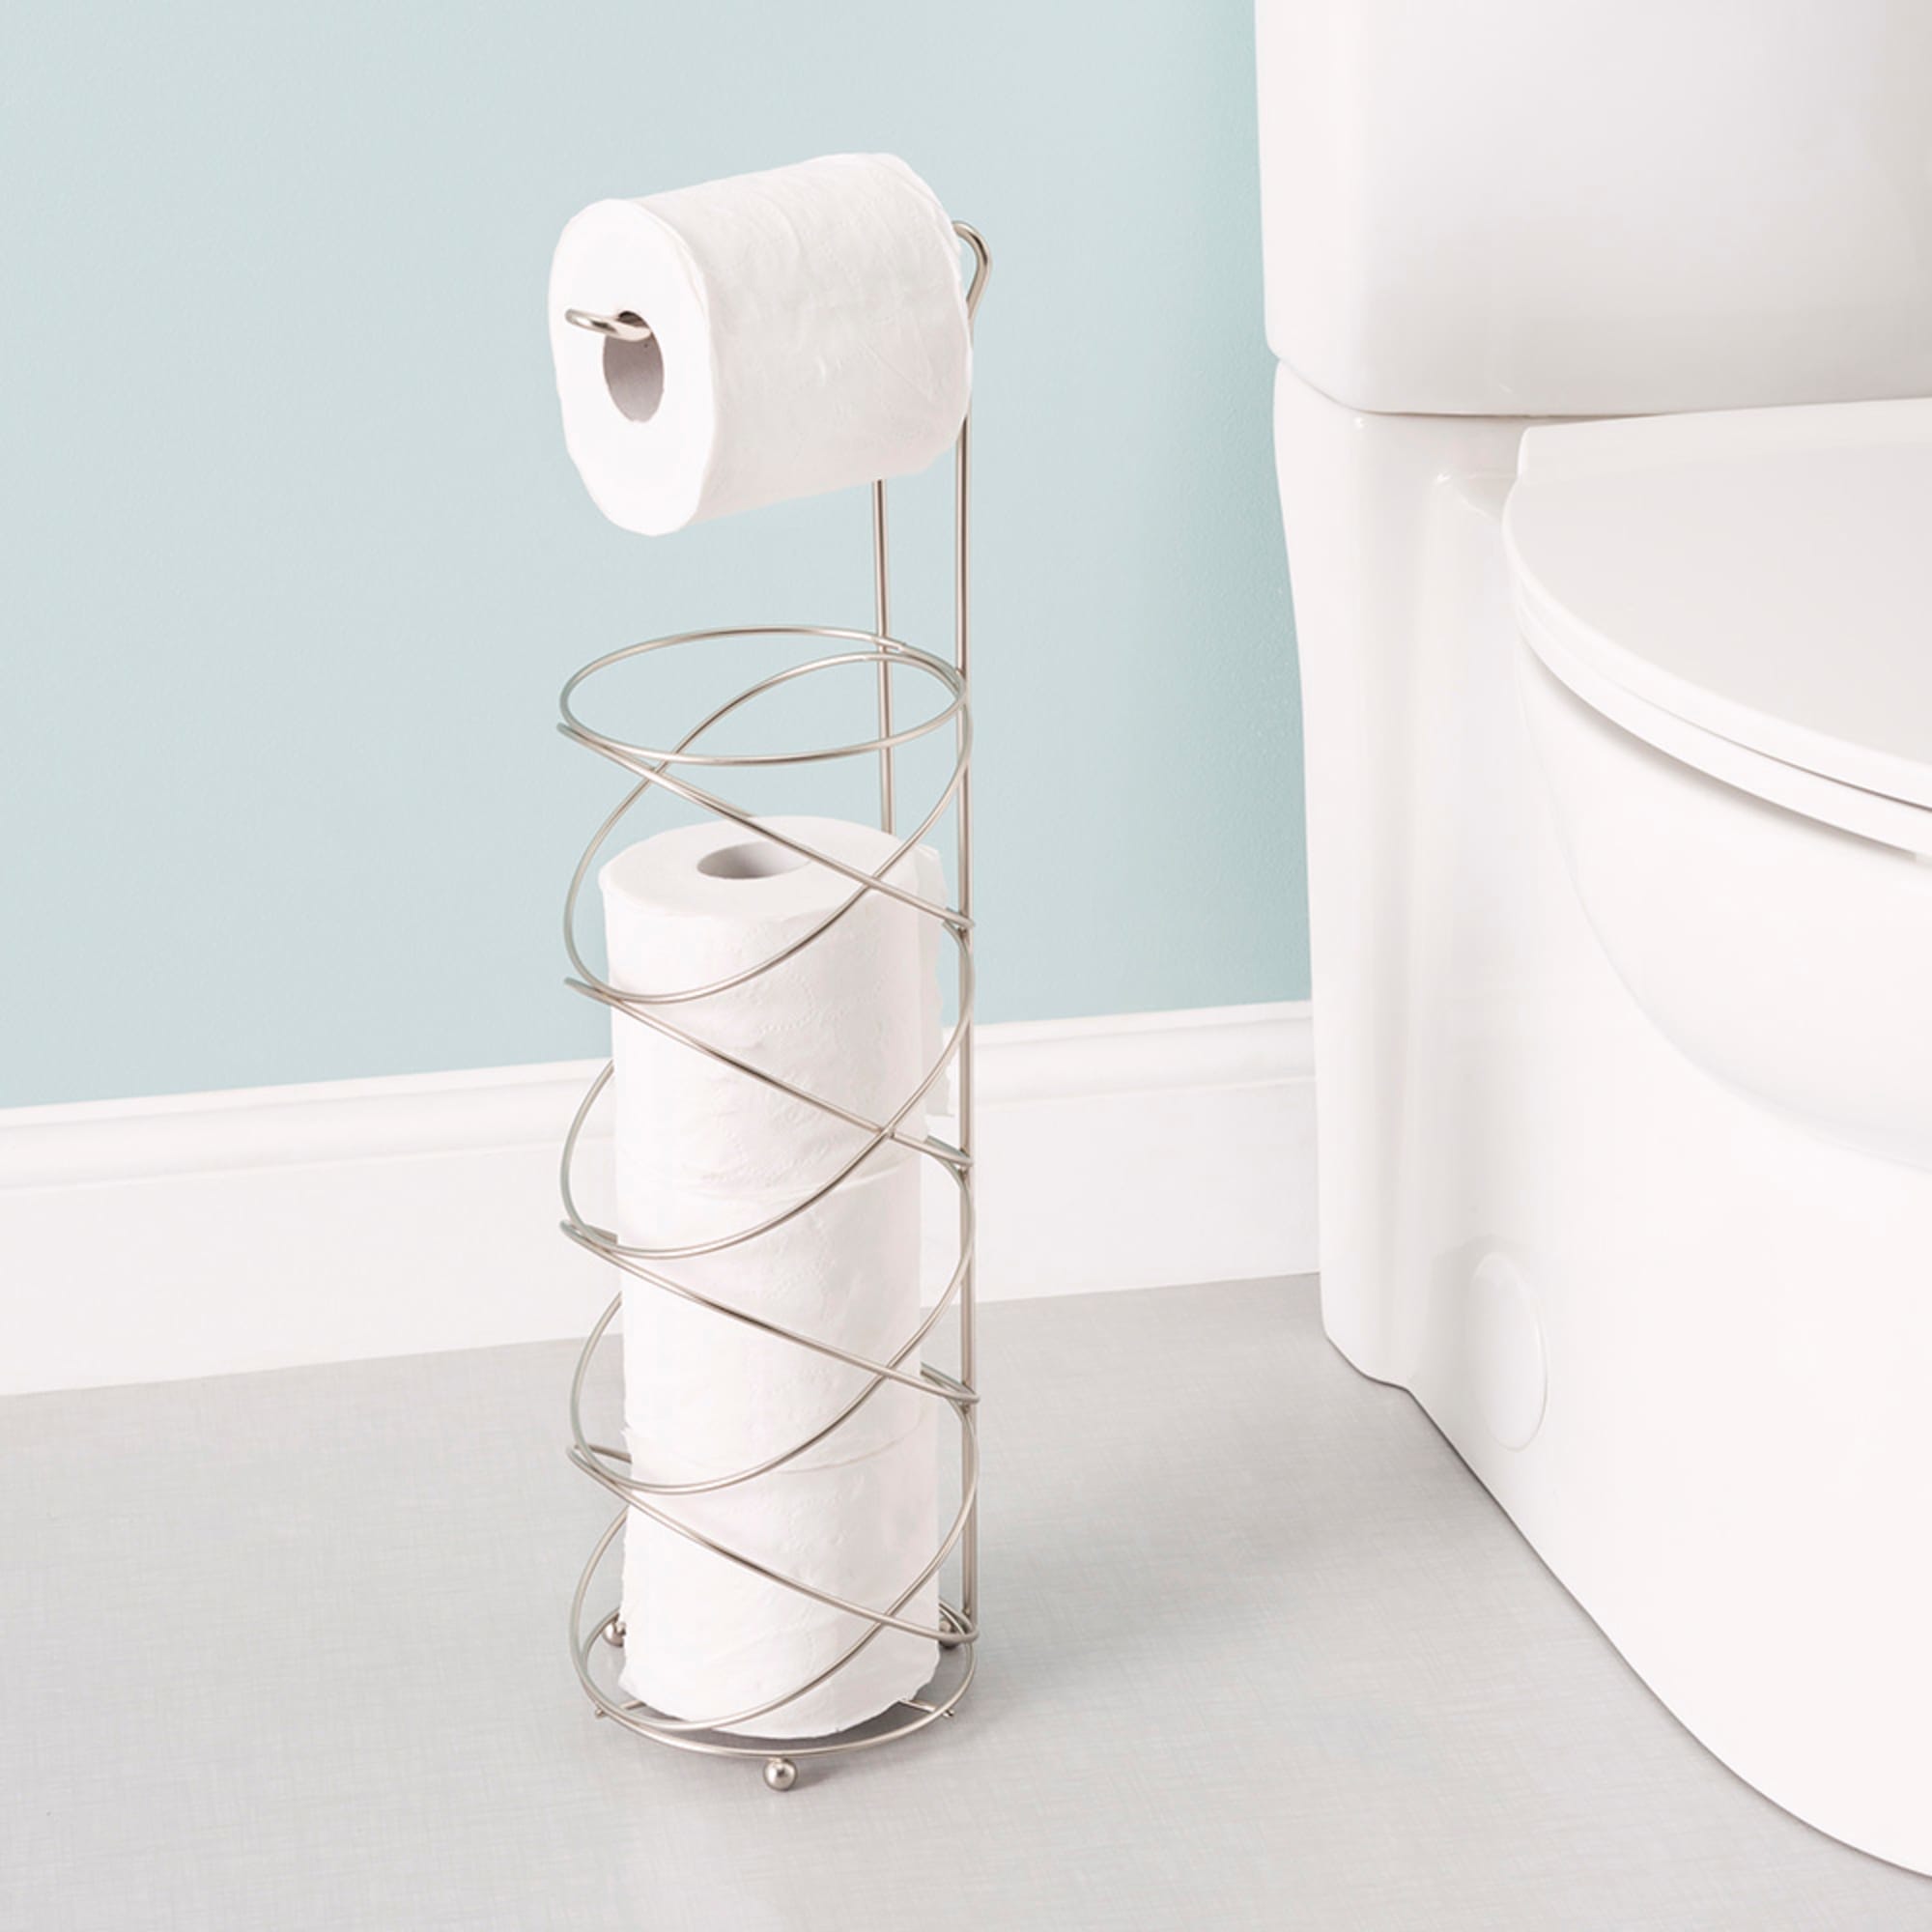 Home Basics Modern Spiral Freestanding Dispensing Toilet Paper Holder, Satin Nickel $12.00 EACH, CASE PACK OF 6